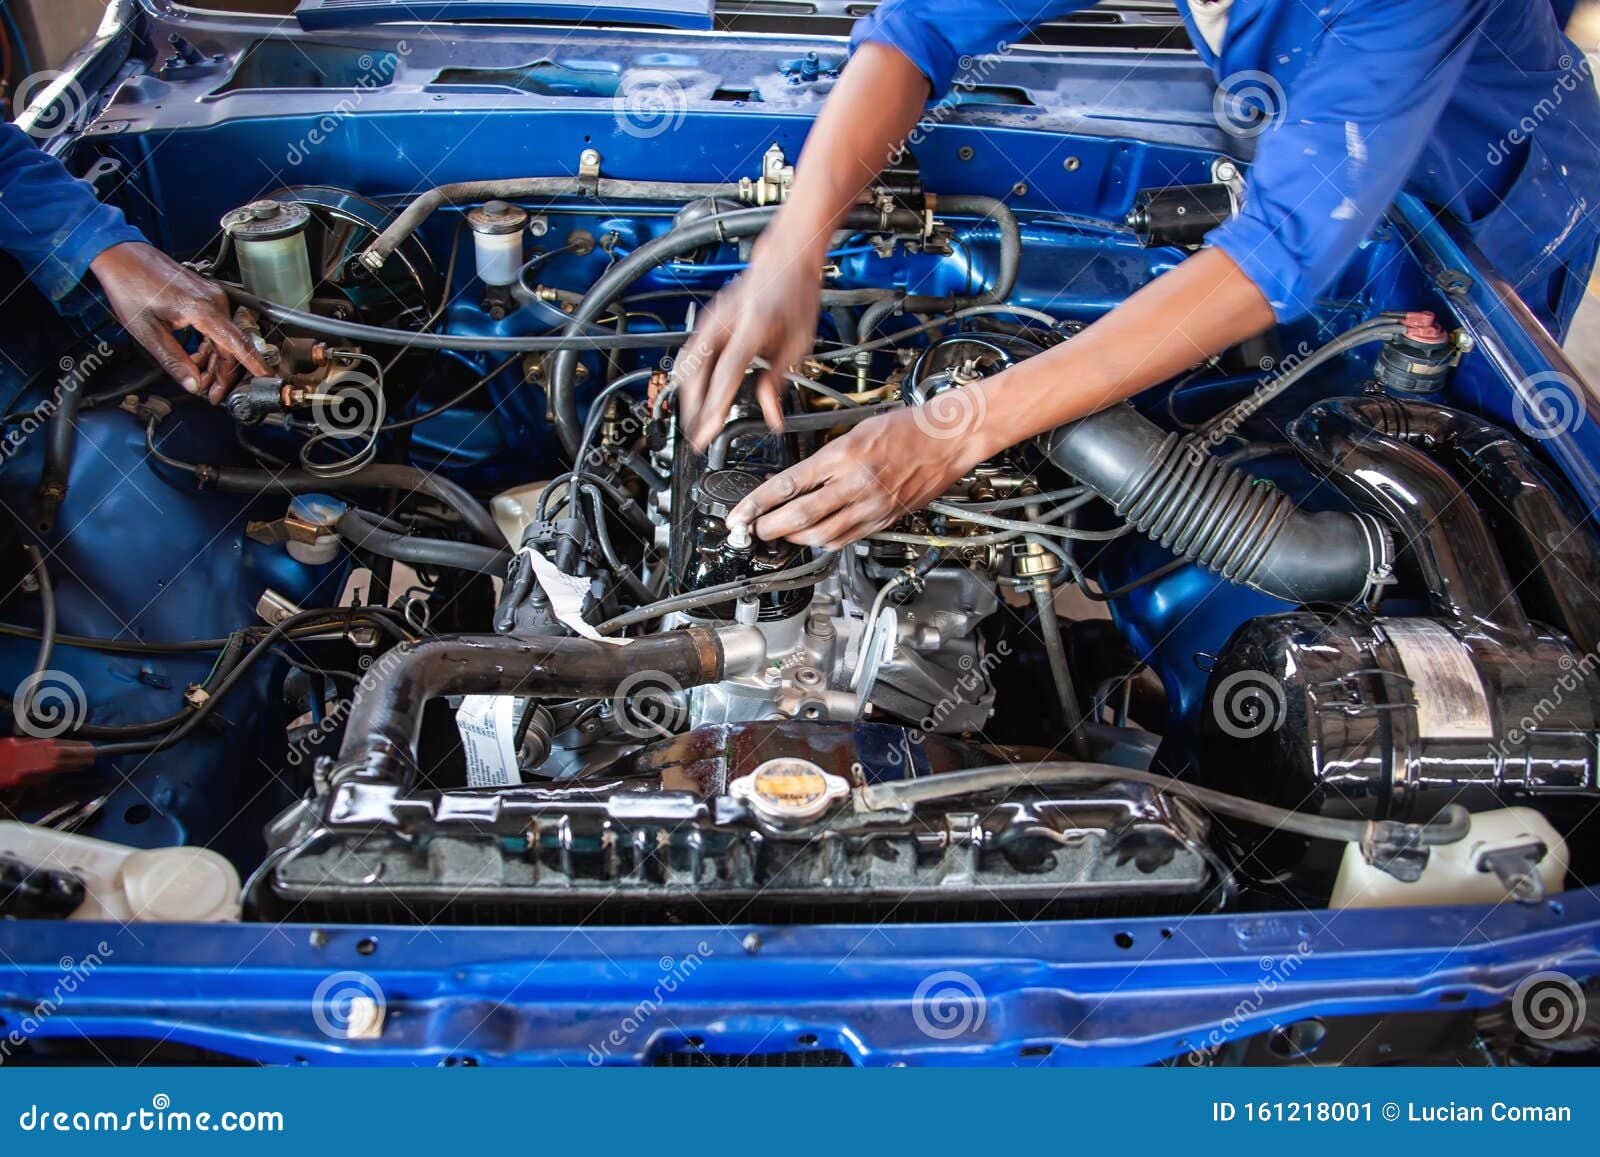 car engine repairs